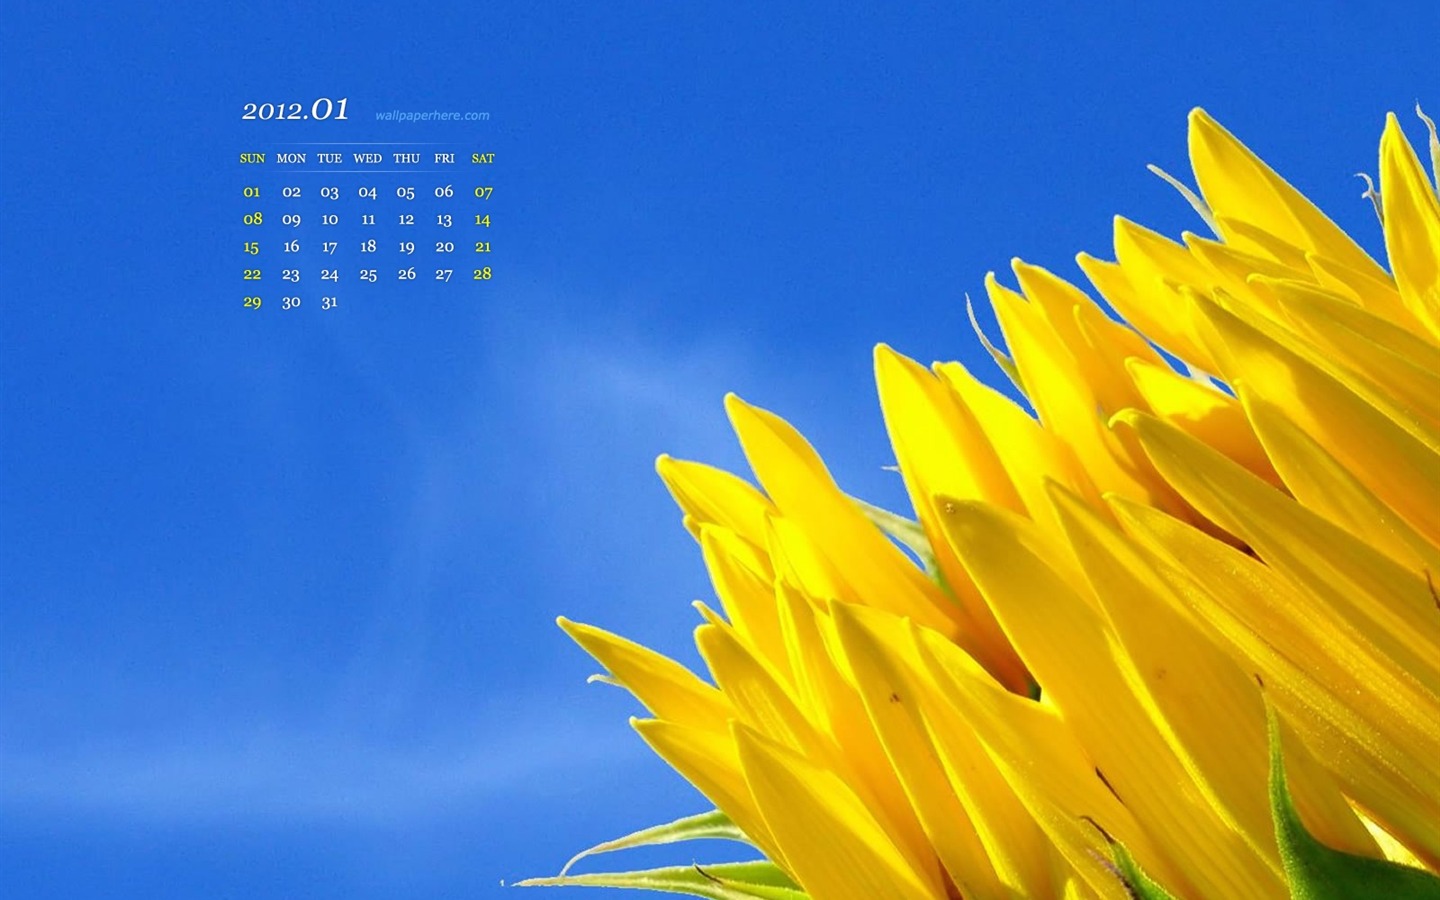 Flower HD-January 2012 calendar desktop themes wallpaper ...